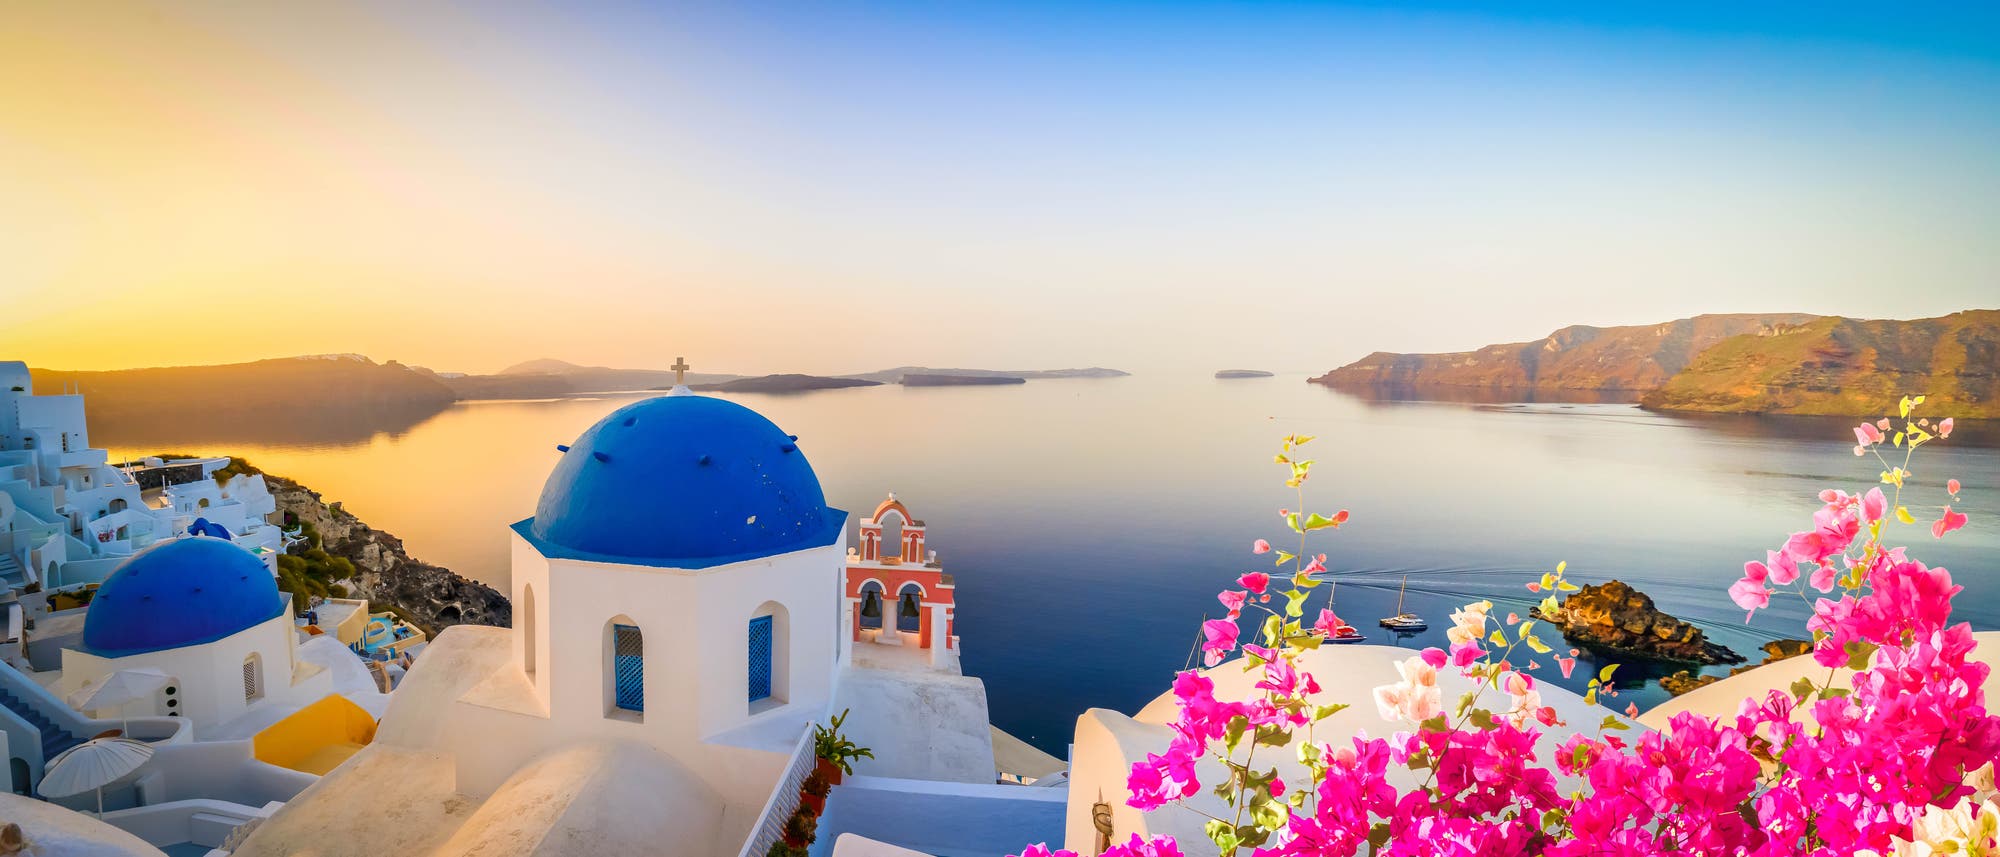 Santorini gilt als Inbegriff griechischer Idylle: Weeiße Häuser strahlen im warmen Abendlicht, der Blick geht auf die Bucht mit tiefblauem Wasser. Im Vordergrund sind rote Blumen